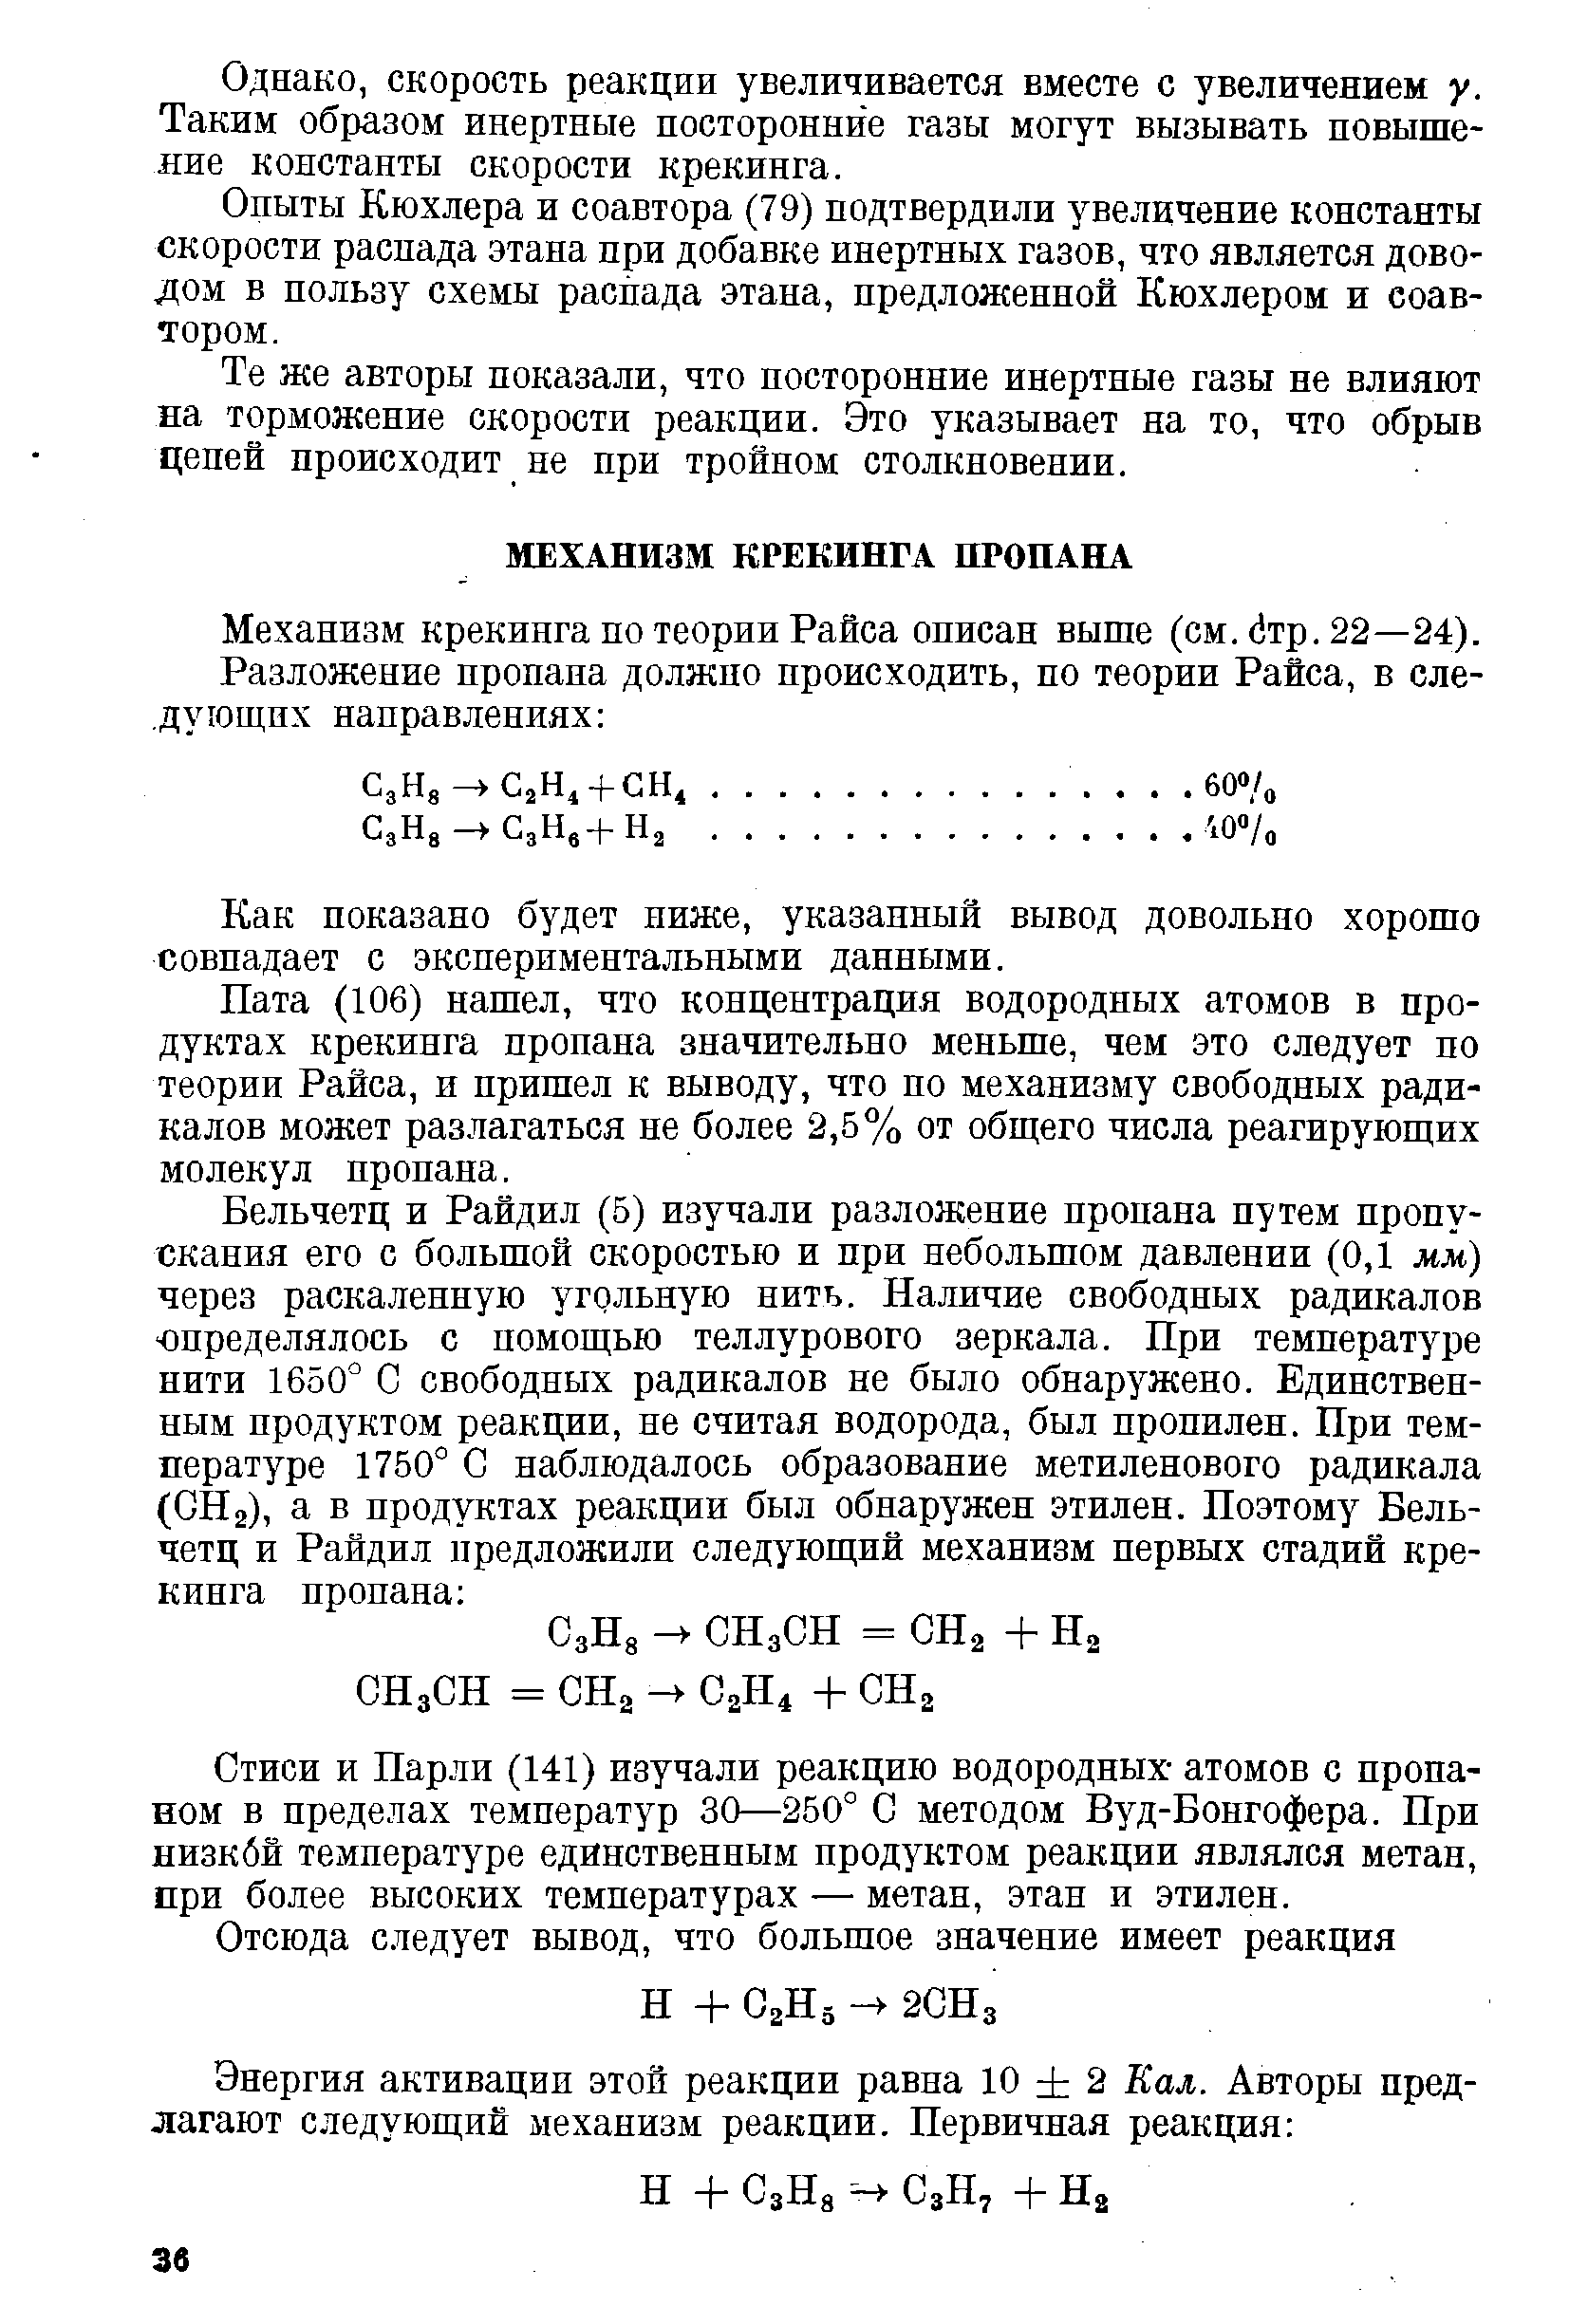 Механизм крекинга по теории Райса описан выше (см. тр. 22—24).